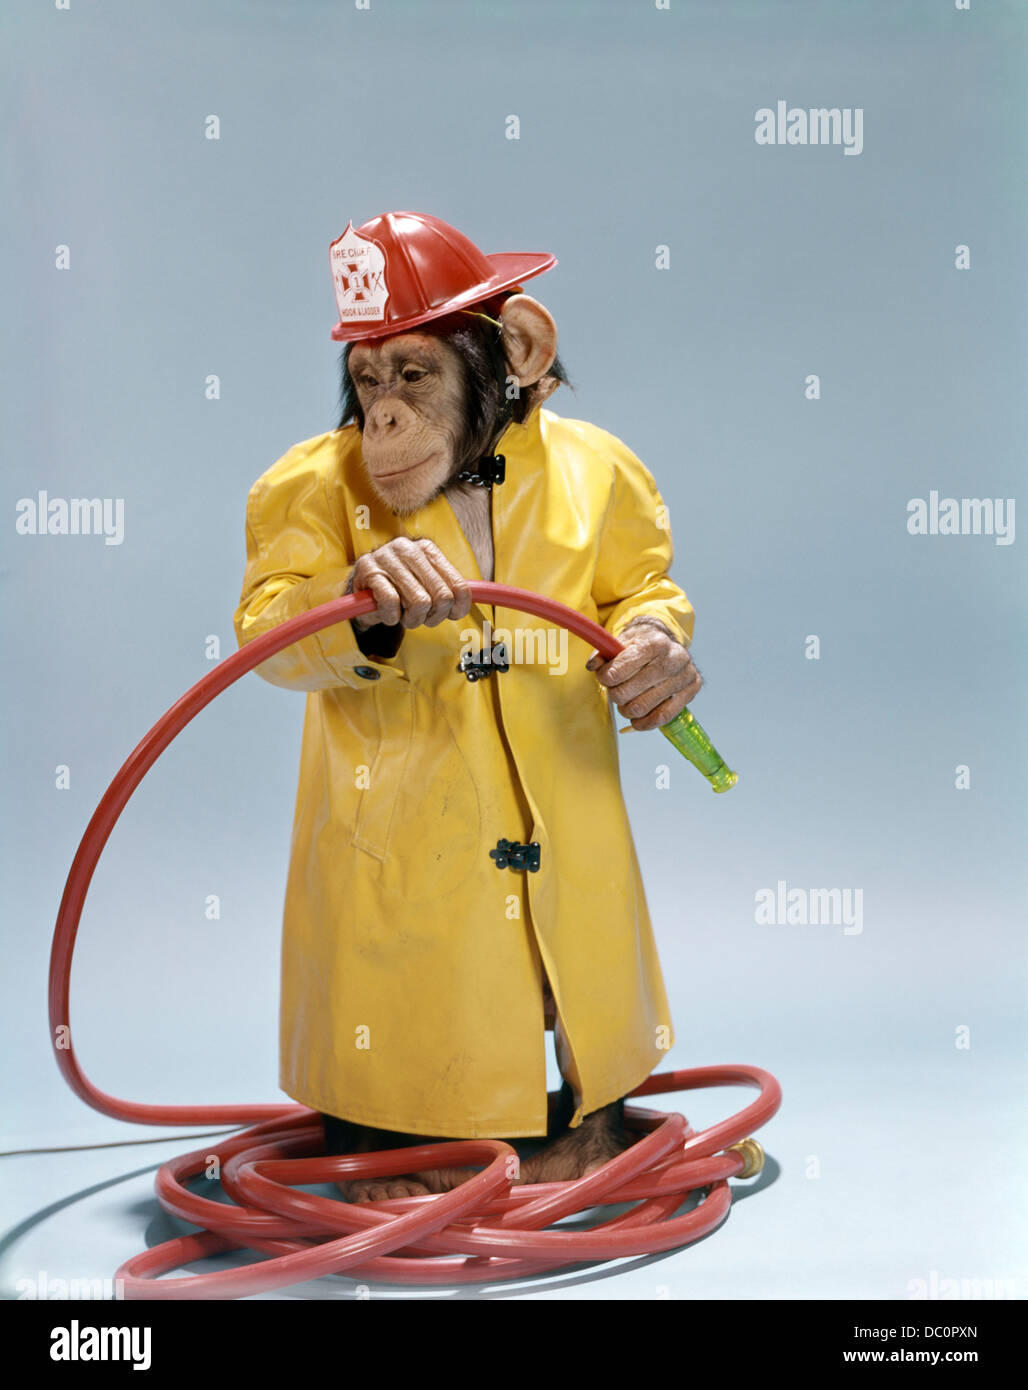 1960 Drôle de chimpanzé dans FIREMAN imperméable et casque de sécurité tenue flexible rouge Banque D'Images